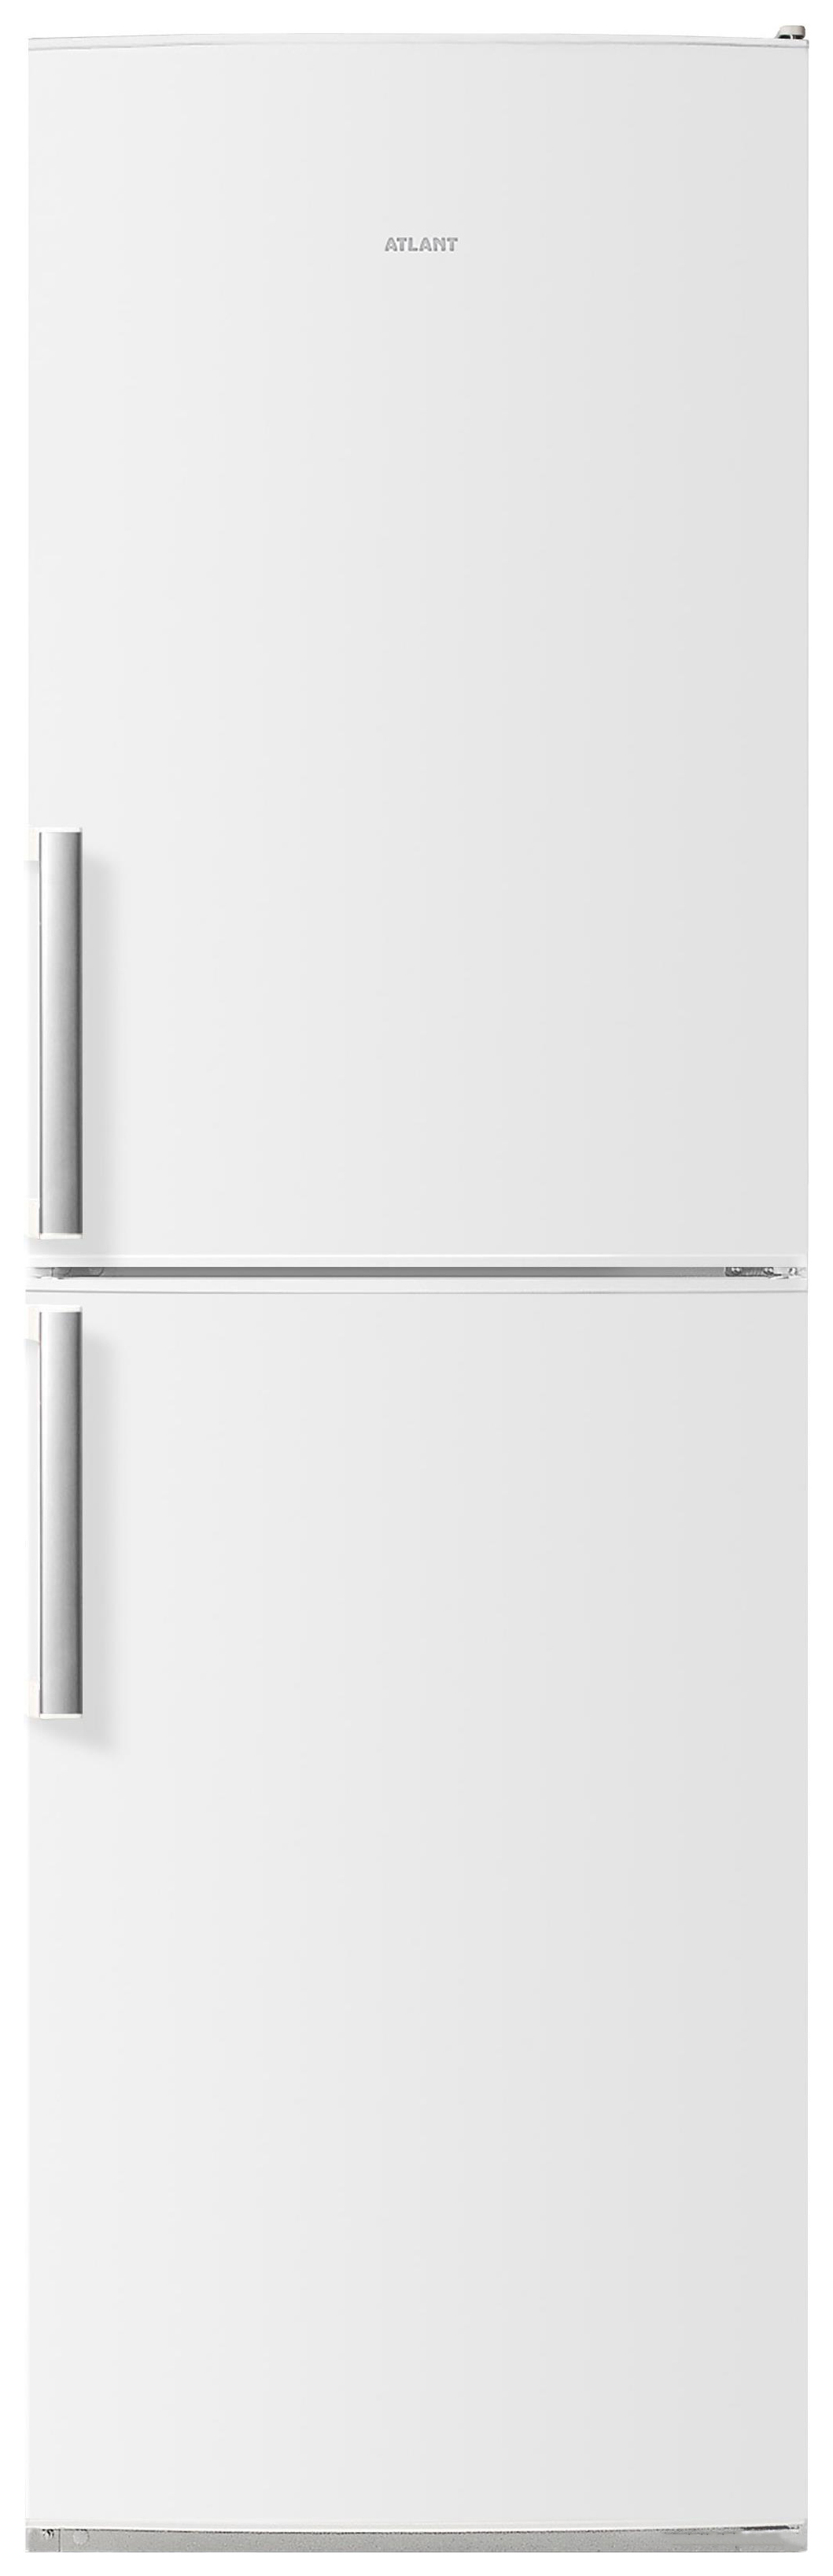 Холодильник ATLANT ХМ 4423-000 N белый холодильник atlant хм 4423 060 n